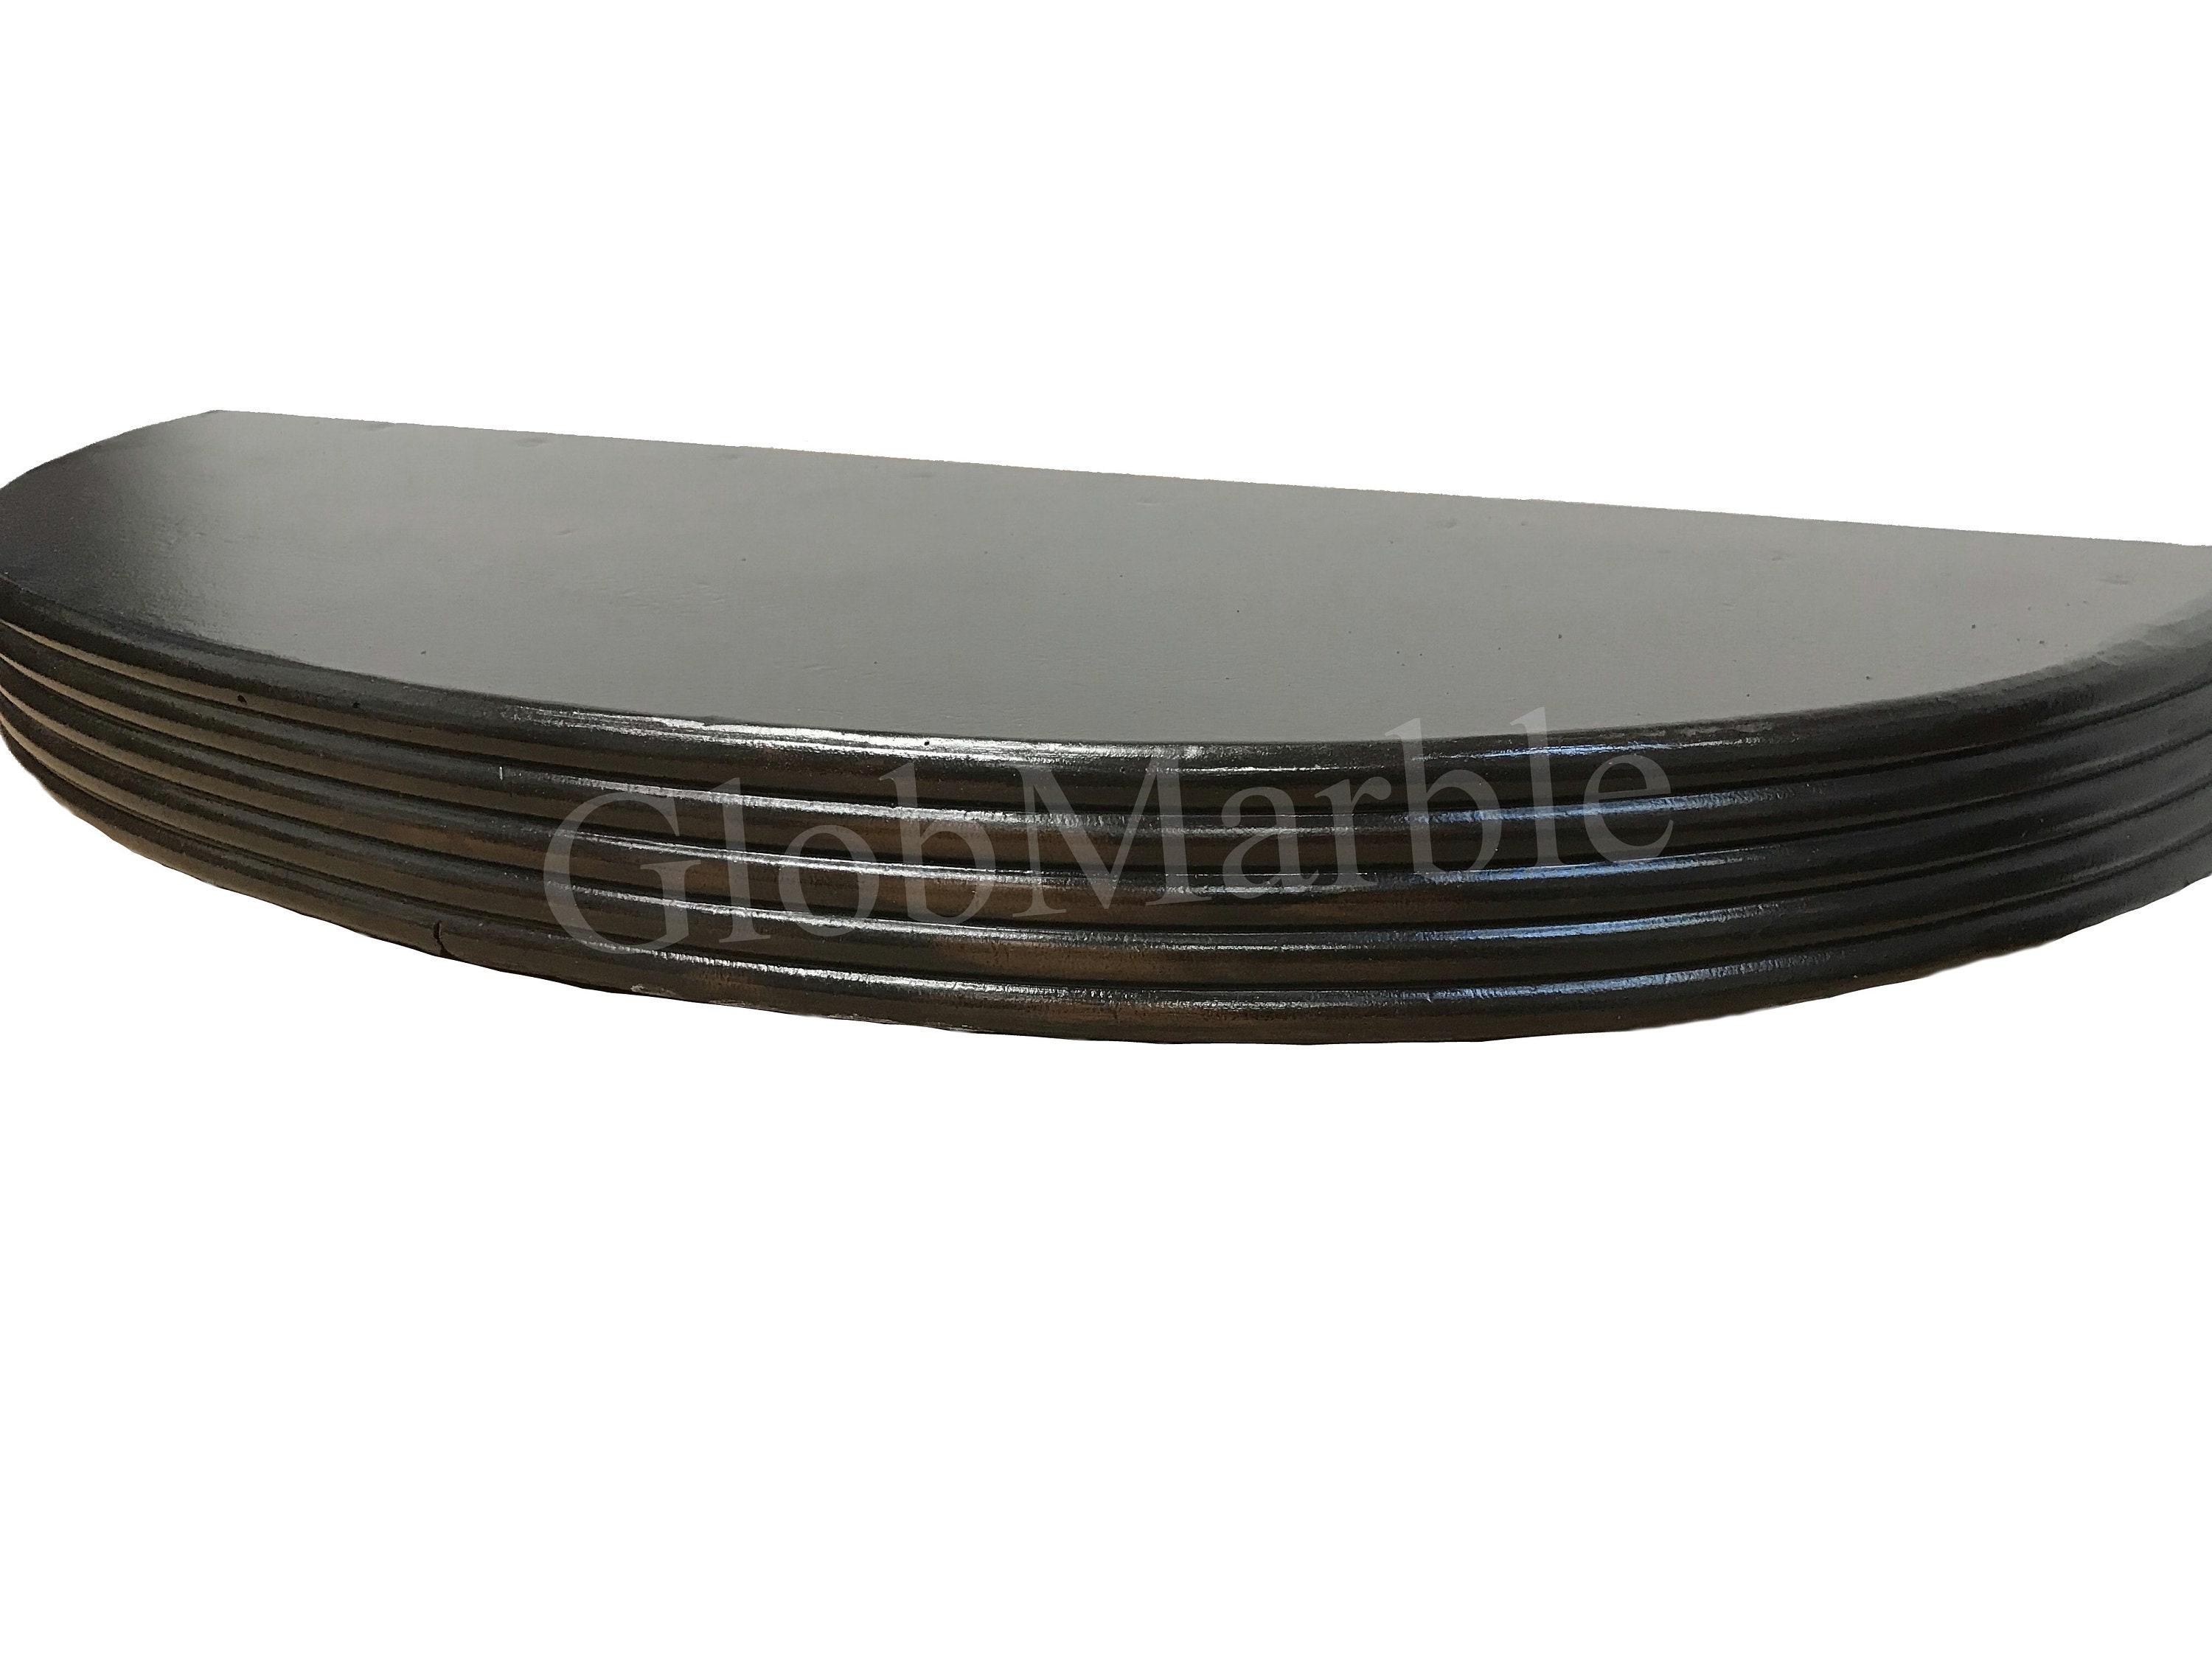 Concrete Countertop Edge Mold Cef 7015 Form Liners Edge Profile